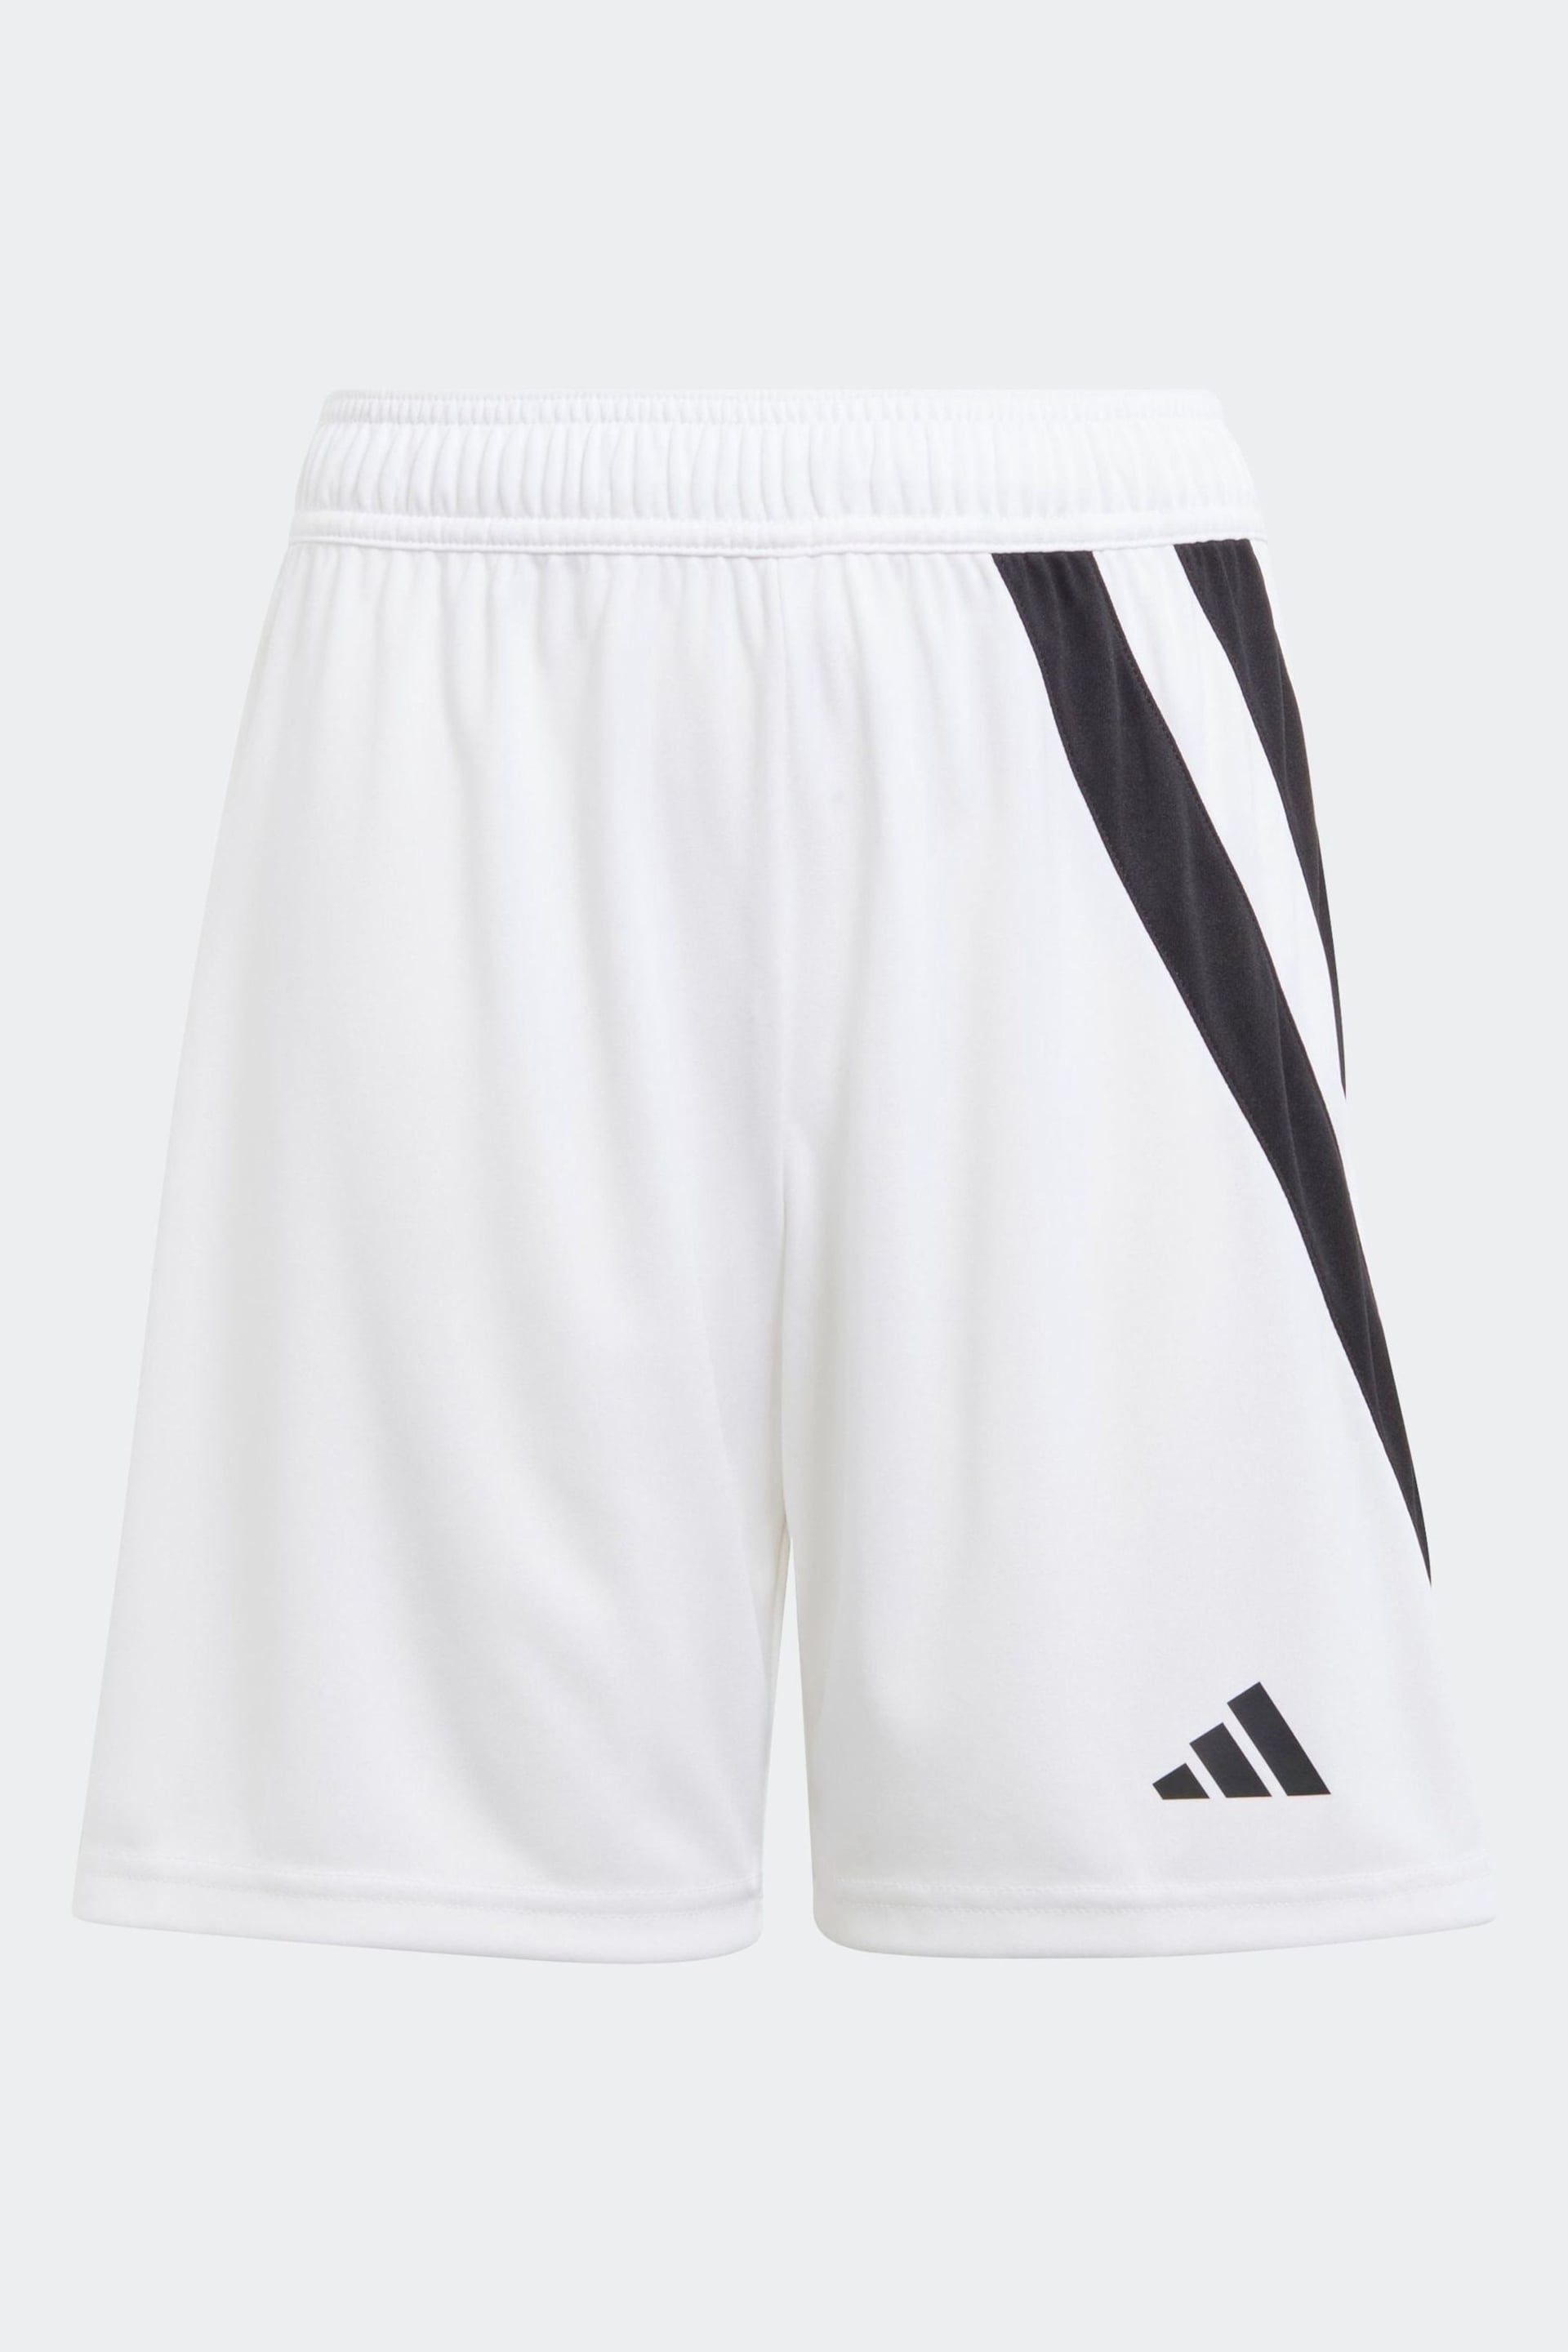 adidas White Fortore 23 Shorts - Image 1 of 3